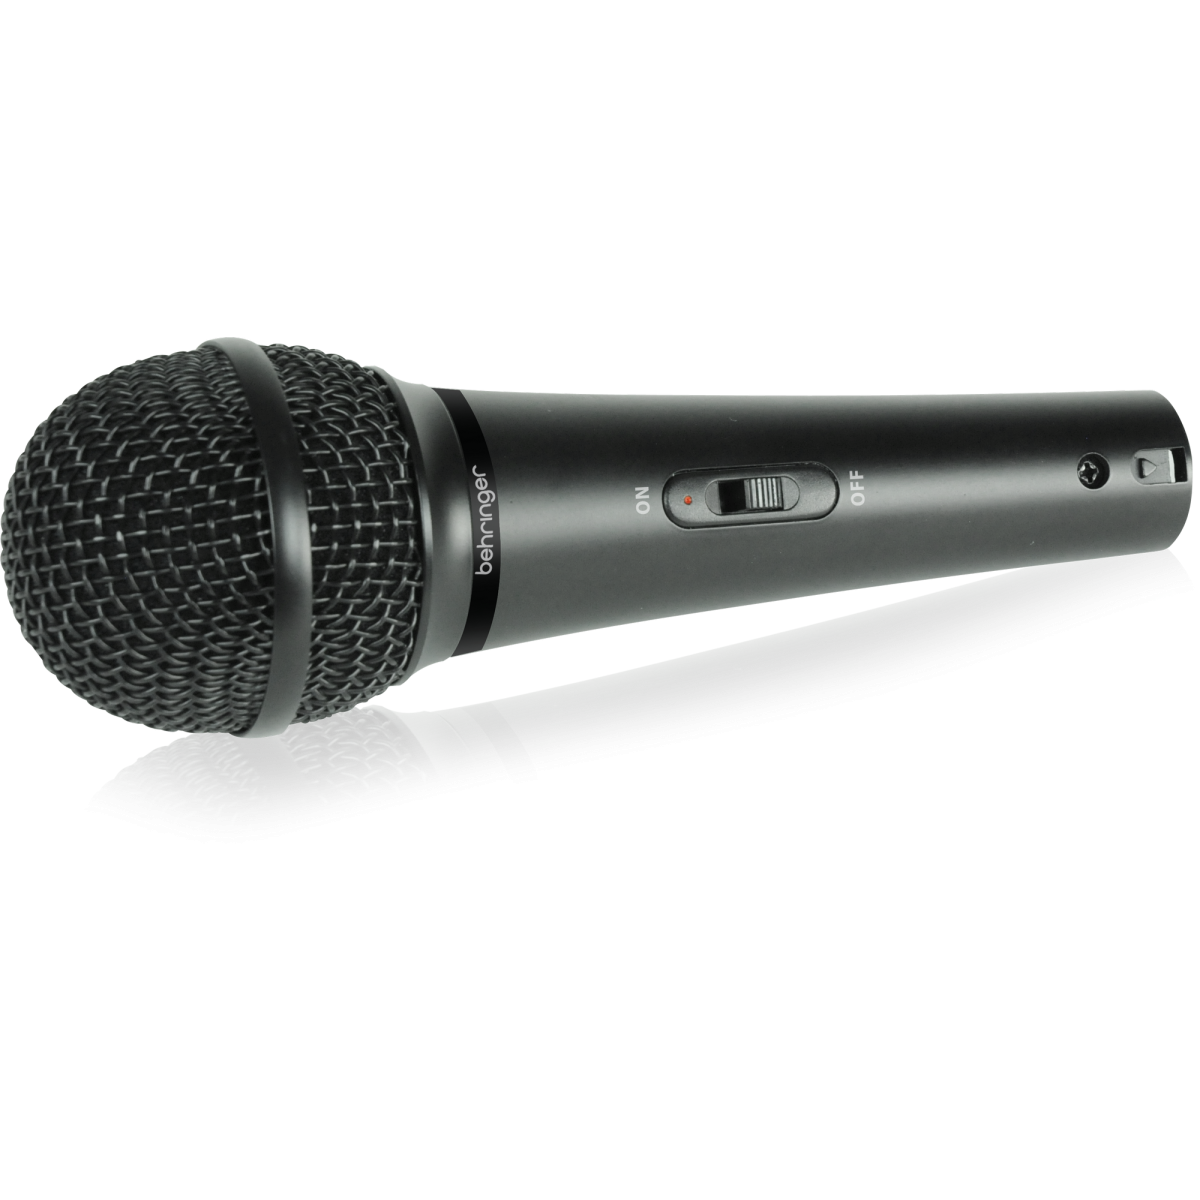 Behringer xm1800s - микрофон. Микрофон Behringer Ultravoice xm1800s. Behringer xm8500. Динамический микрофон Behringer. Профессиональный микрофон цена